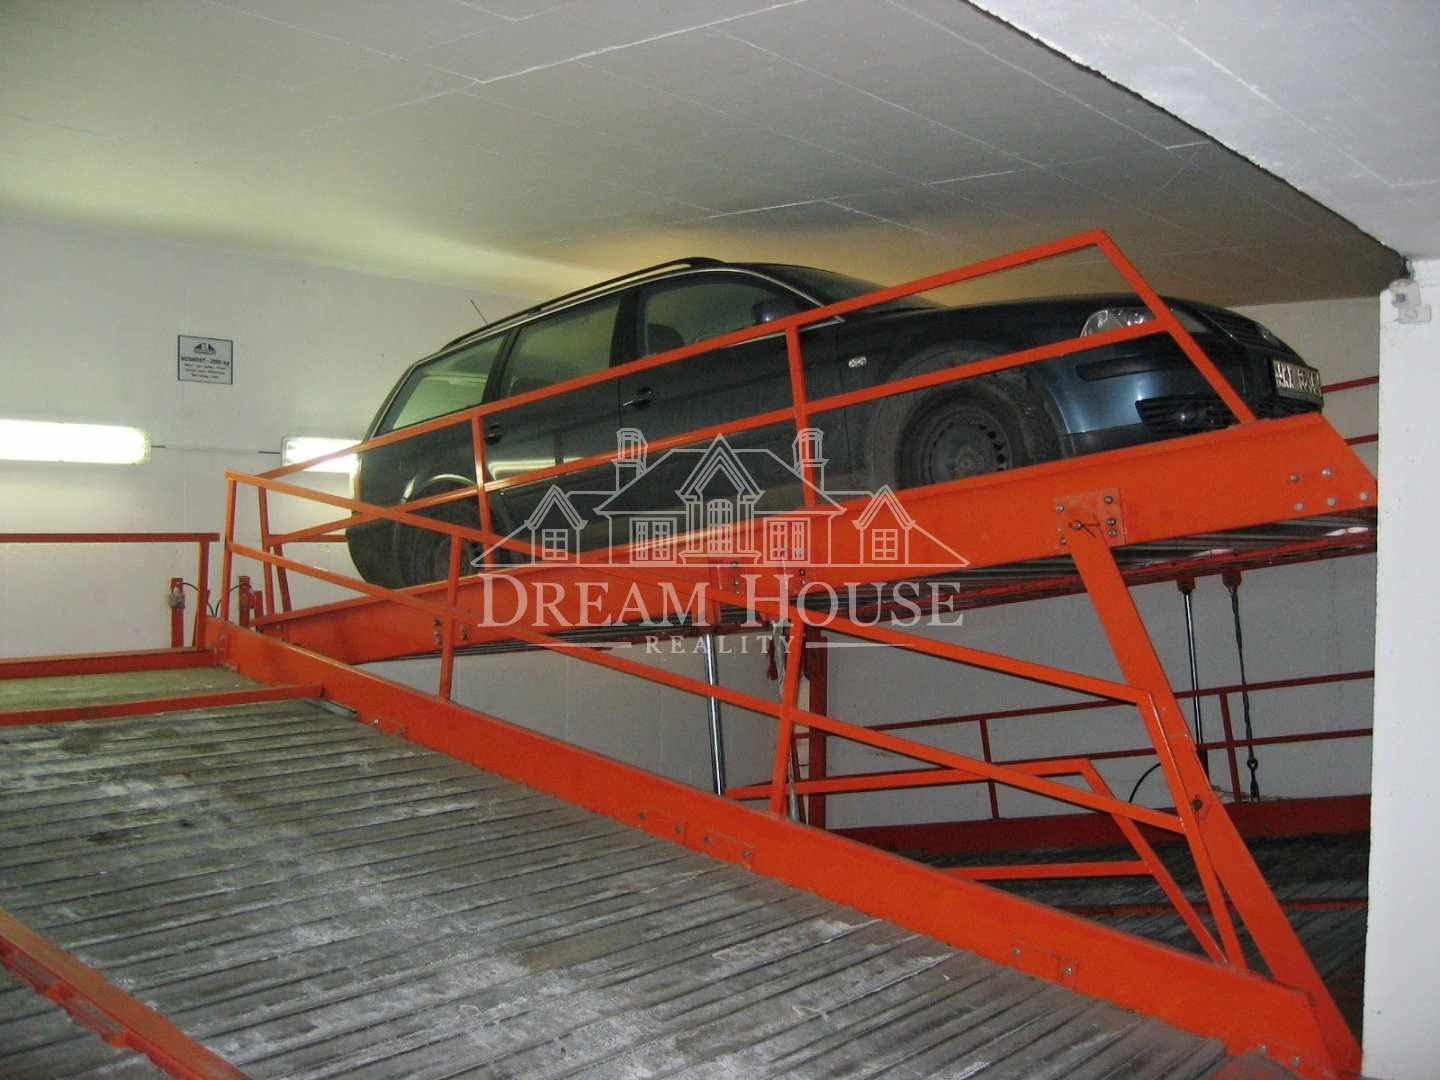 Pronájem parkovacího místa v podzemní garáži, Praha 2 - Vinohrady, v zakladači